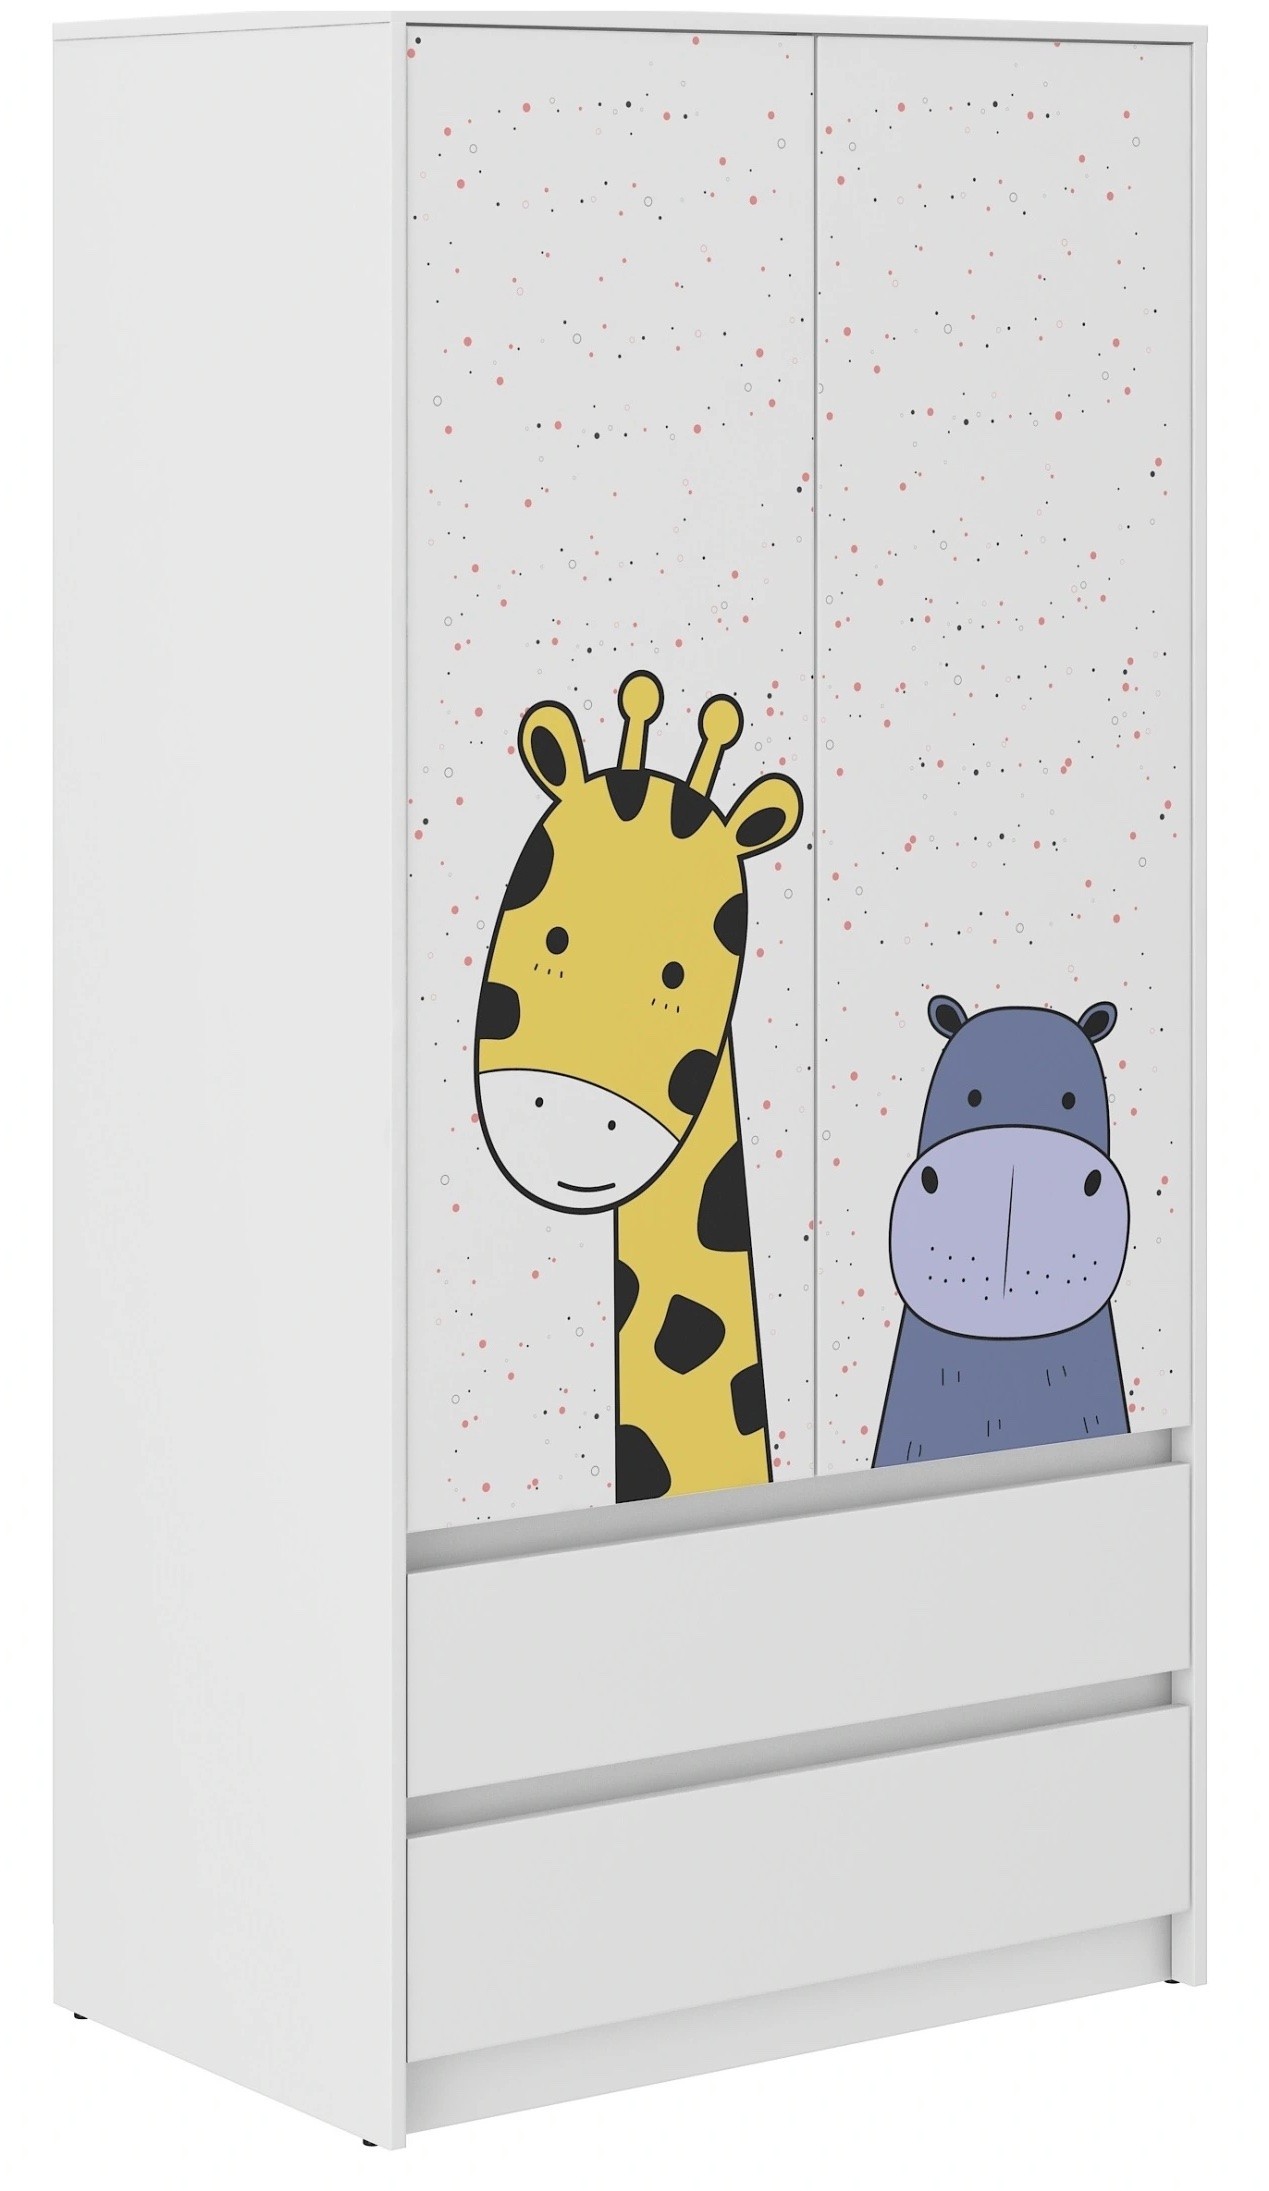 E-shop Detská šatníková skriňa s veľkou žirafou 180x55x90 cm